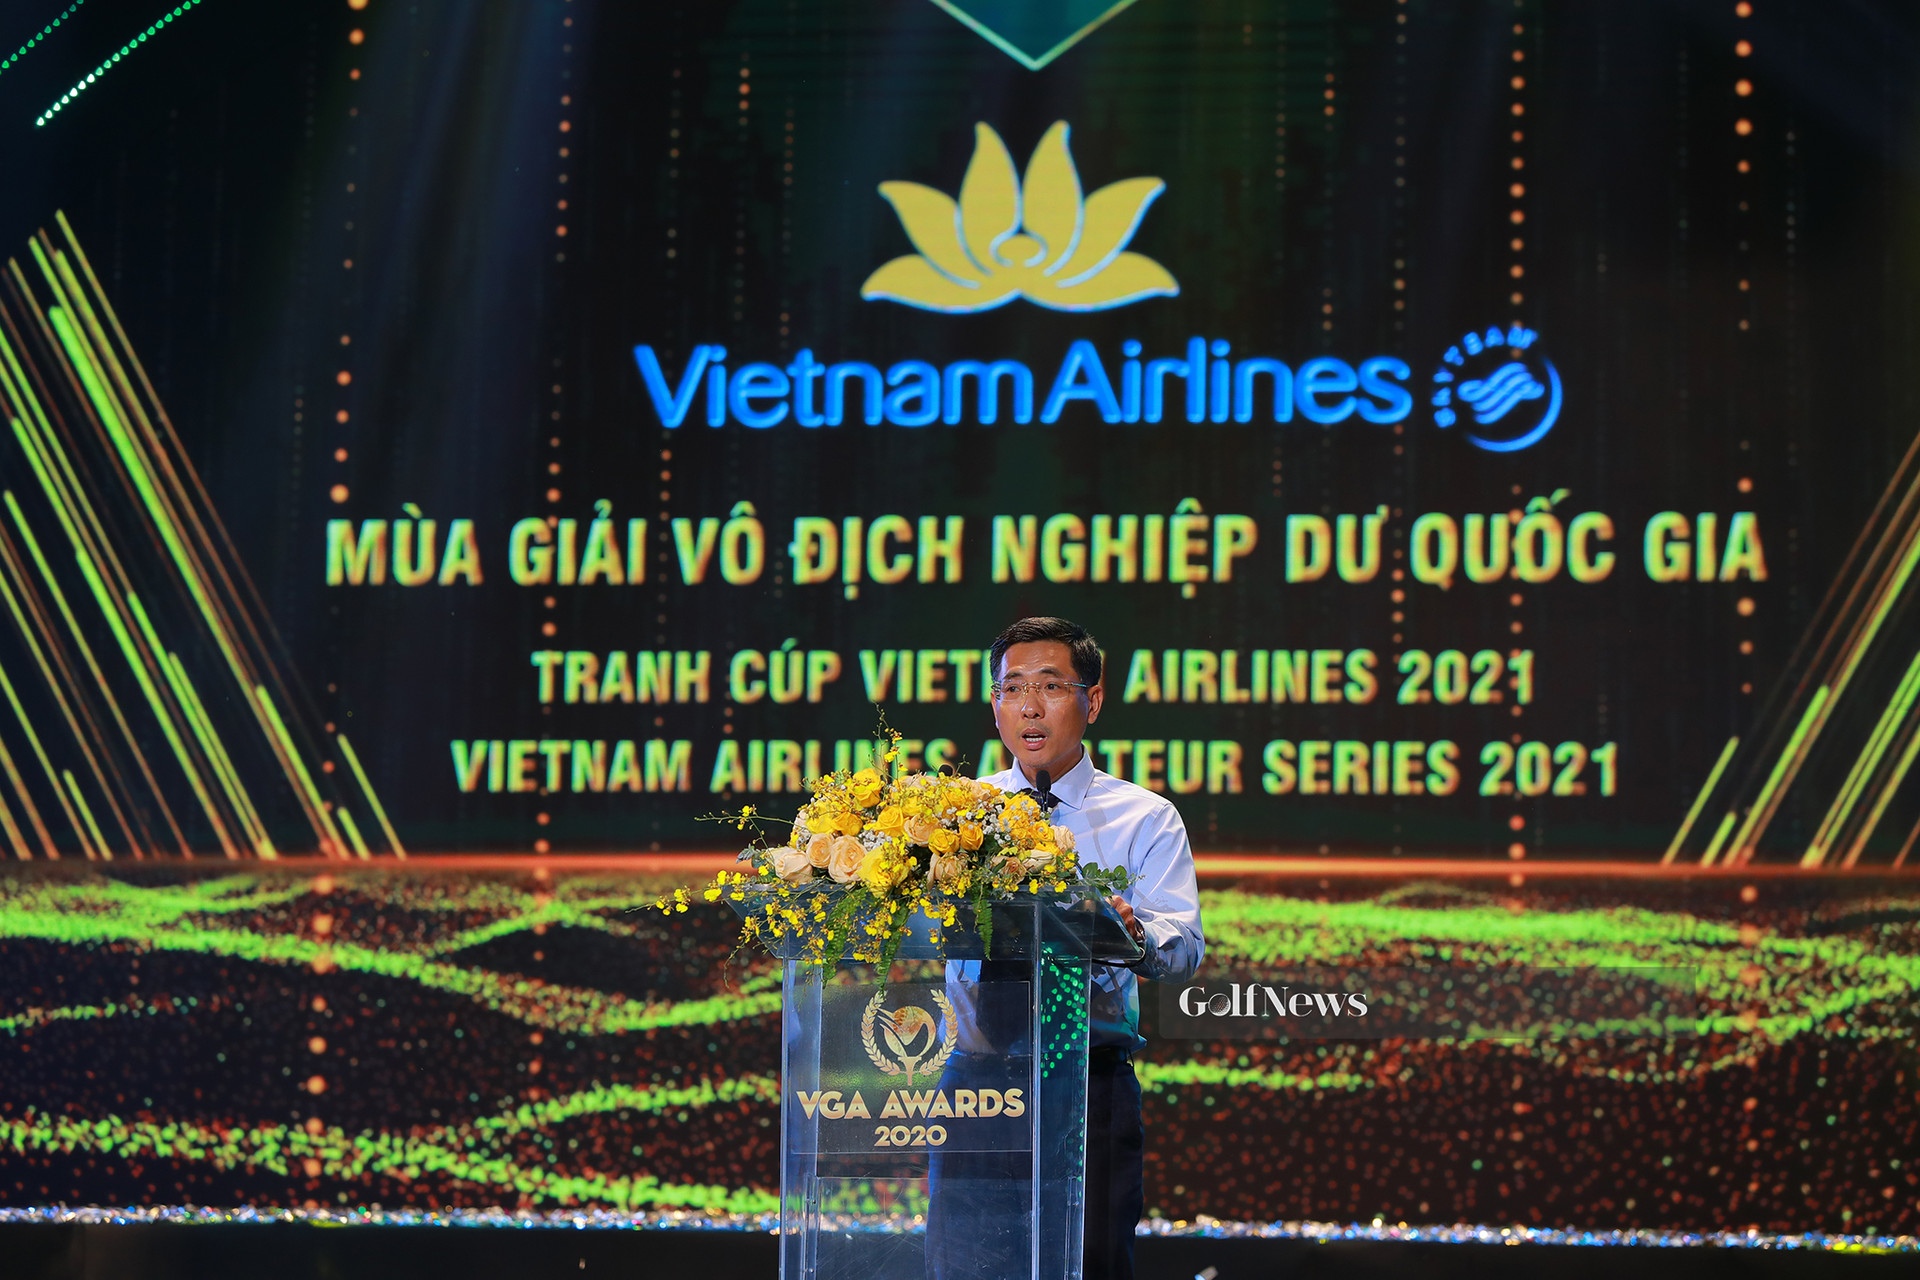 Vietnam Airlines: Nhà tài trợ danh xưng cho mùa giải vô địch golf Nghiệp dư Quốc gia 2021 - Ảnh 1.